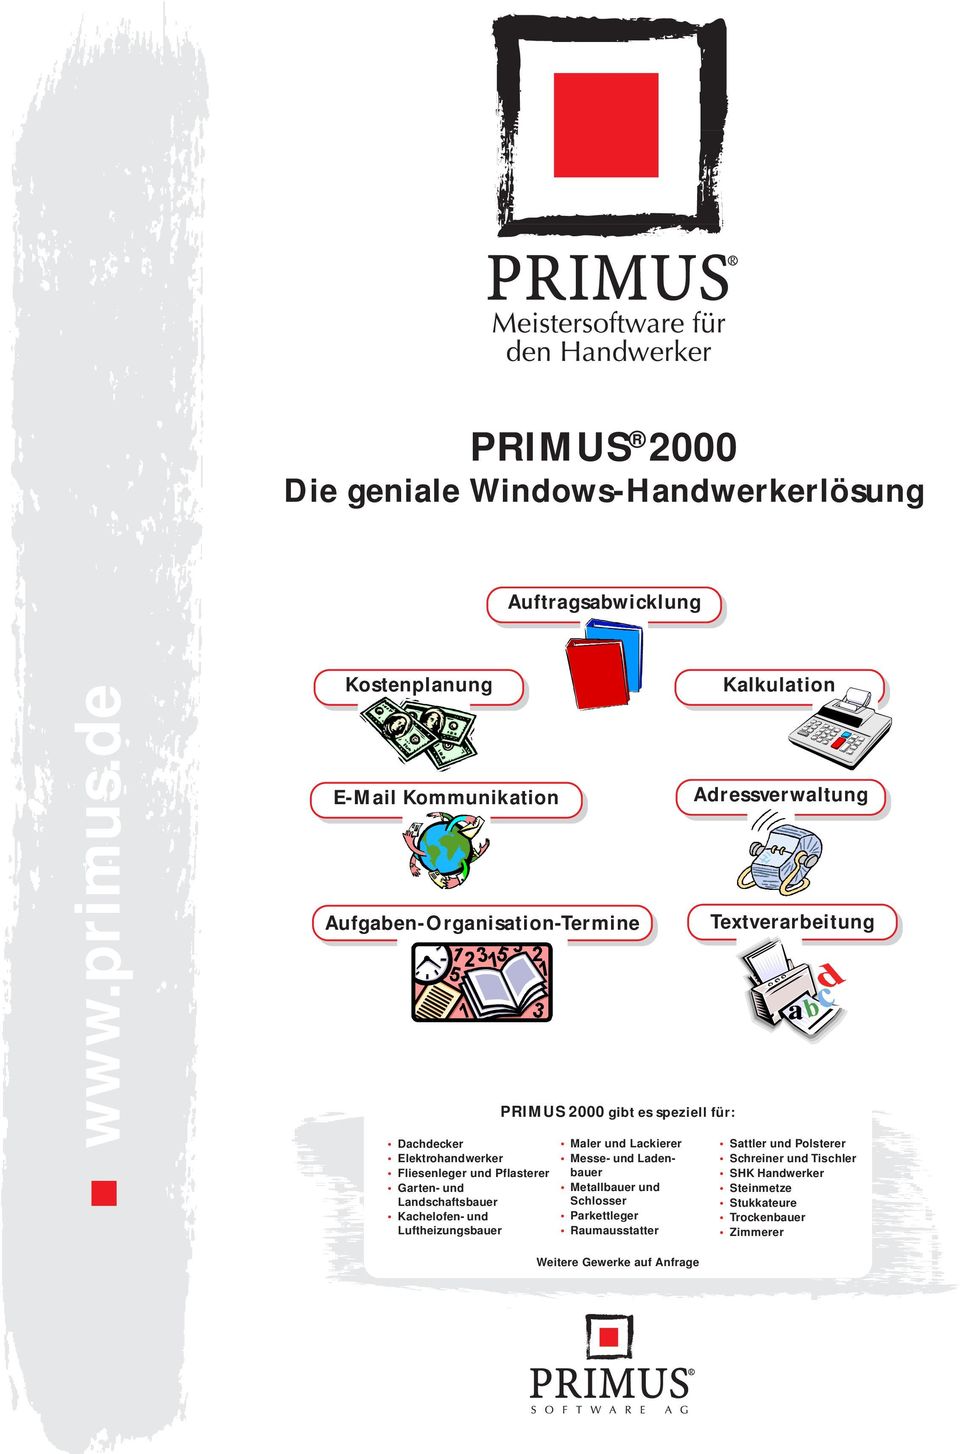 Landschaftsbauer Kacheofen- und Luftheizungsbauer PRIMUS 2000 gibt es spezie für: Maer und Lackierer Messe- und Ladenbauer Metabauer und